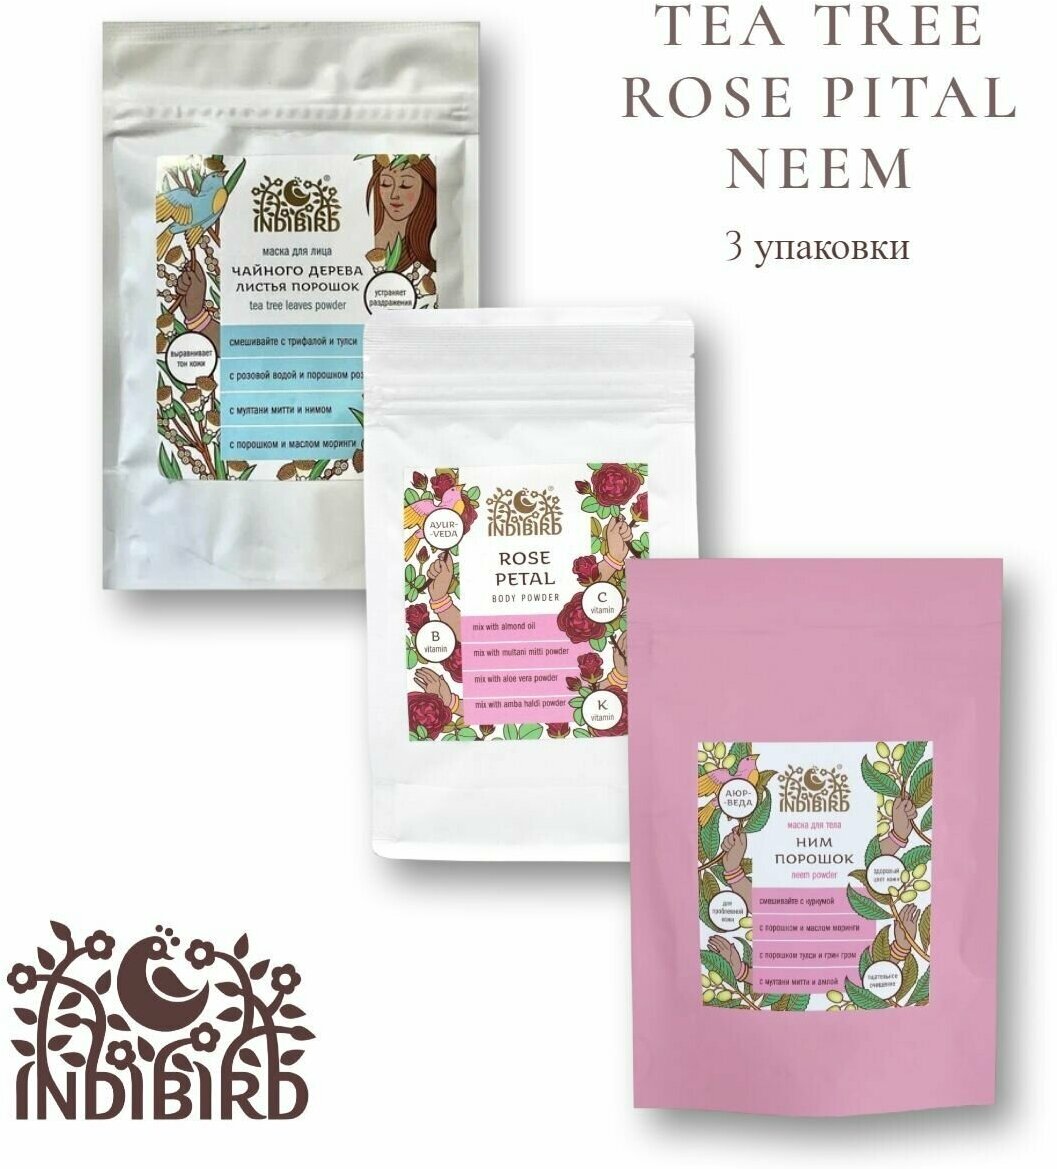 Набор Indibird Порошок-маска для лица и тела Чайного дерева листья (Tea Tree Leaves) 50 гр, Ним (Neem) 100 гр, Лепестки розы (Rose petals) 50 гр